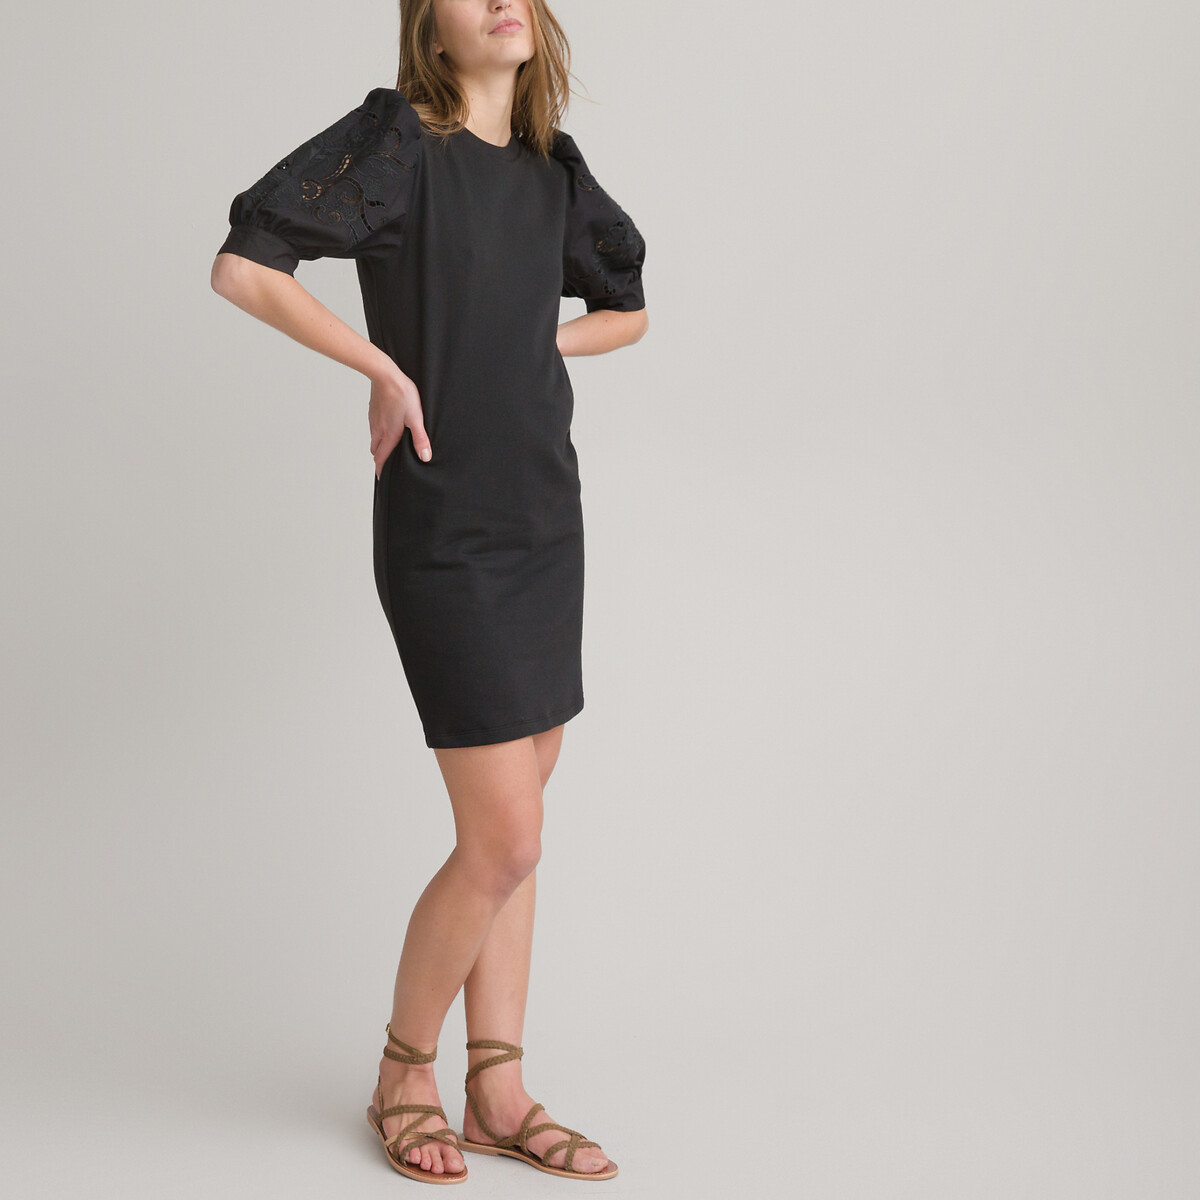 Платье-свитшот короткое напускные рукава с вышивкой XS черный платье свитшот короткое напускные рукава с вышивкой m бежевый